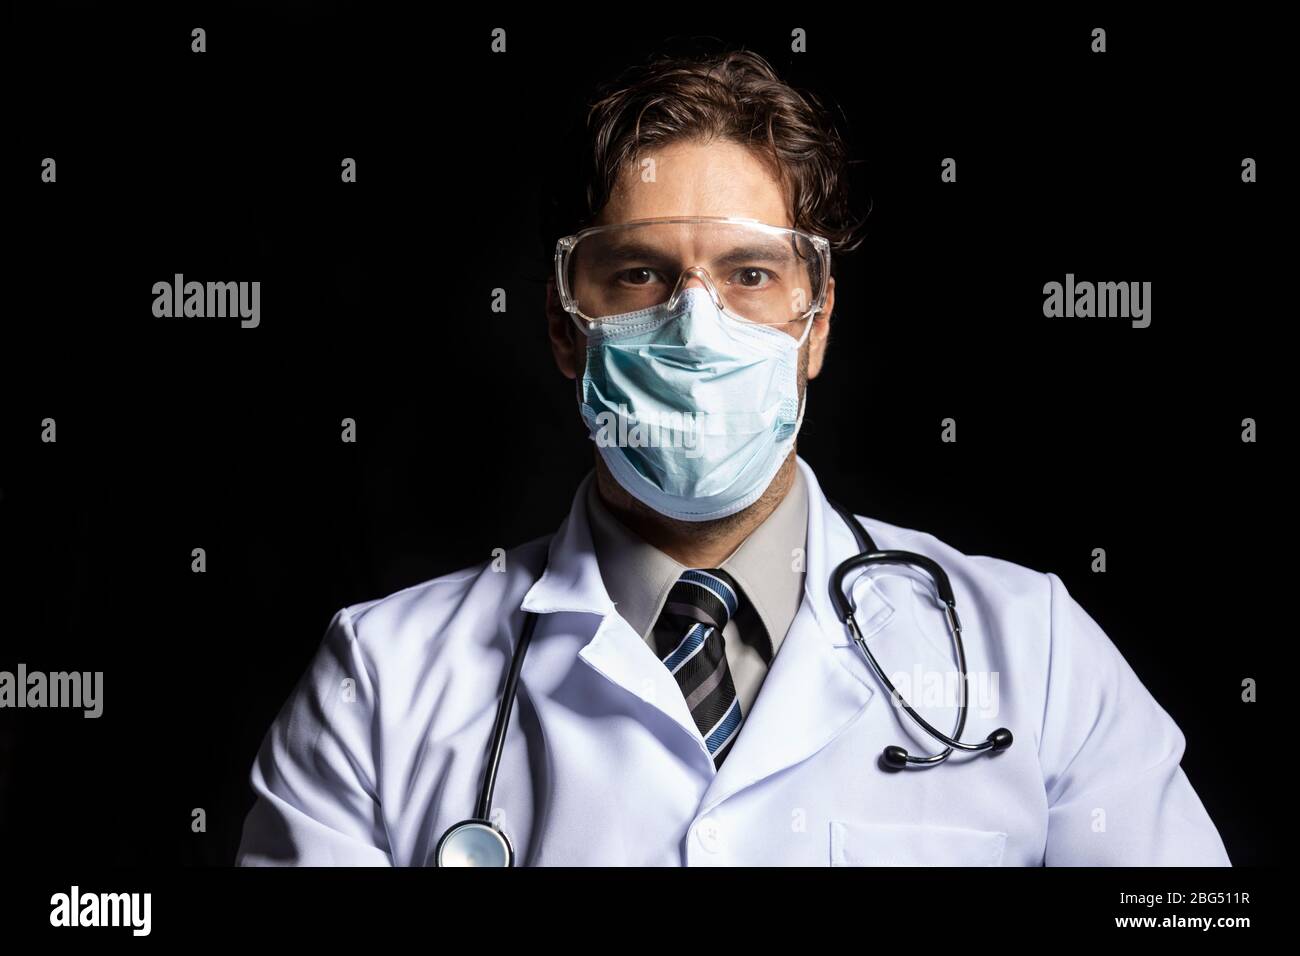 médecin homme portant un masque et des lunettes, fatigué de travailler avec covid-19 sur un fond noir. Banque D'Images